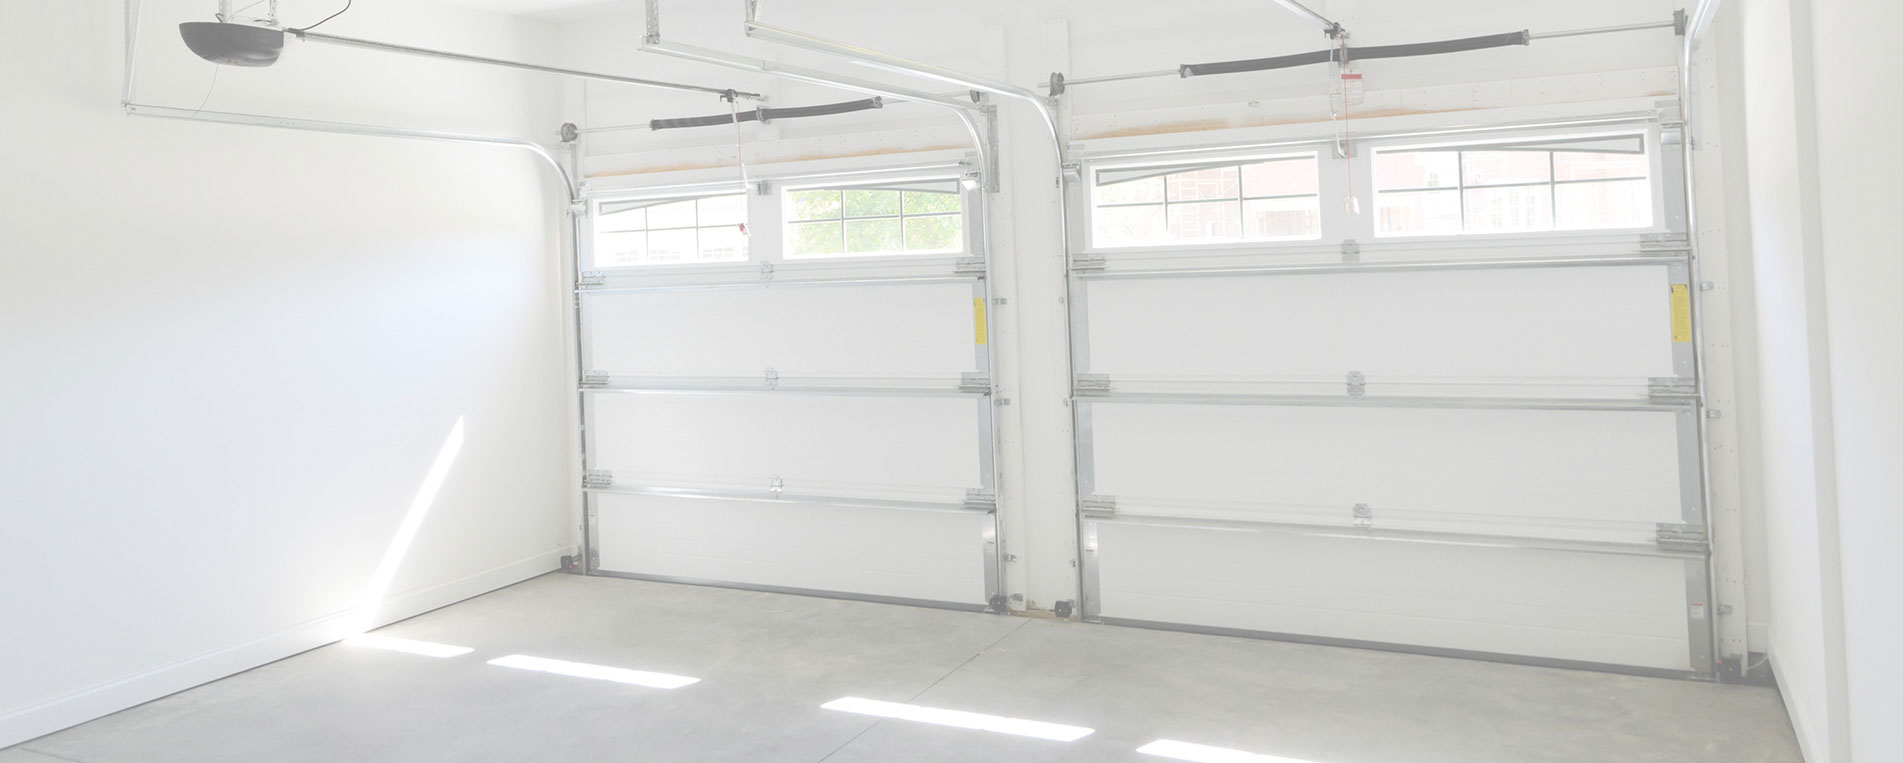 How Do I Avoid A Garage Door Accident?